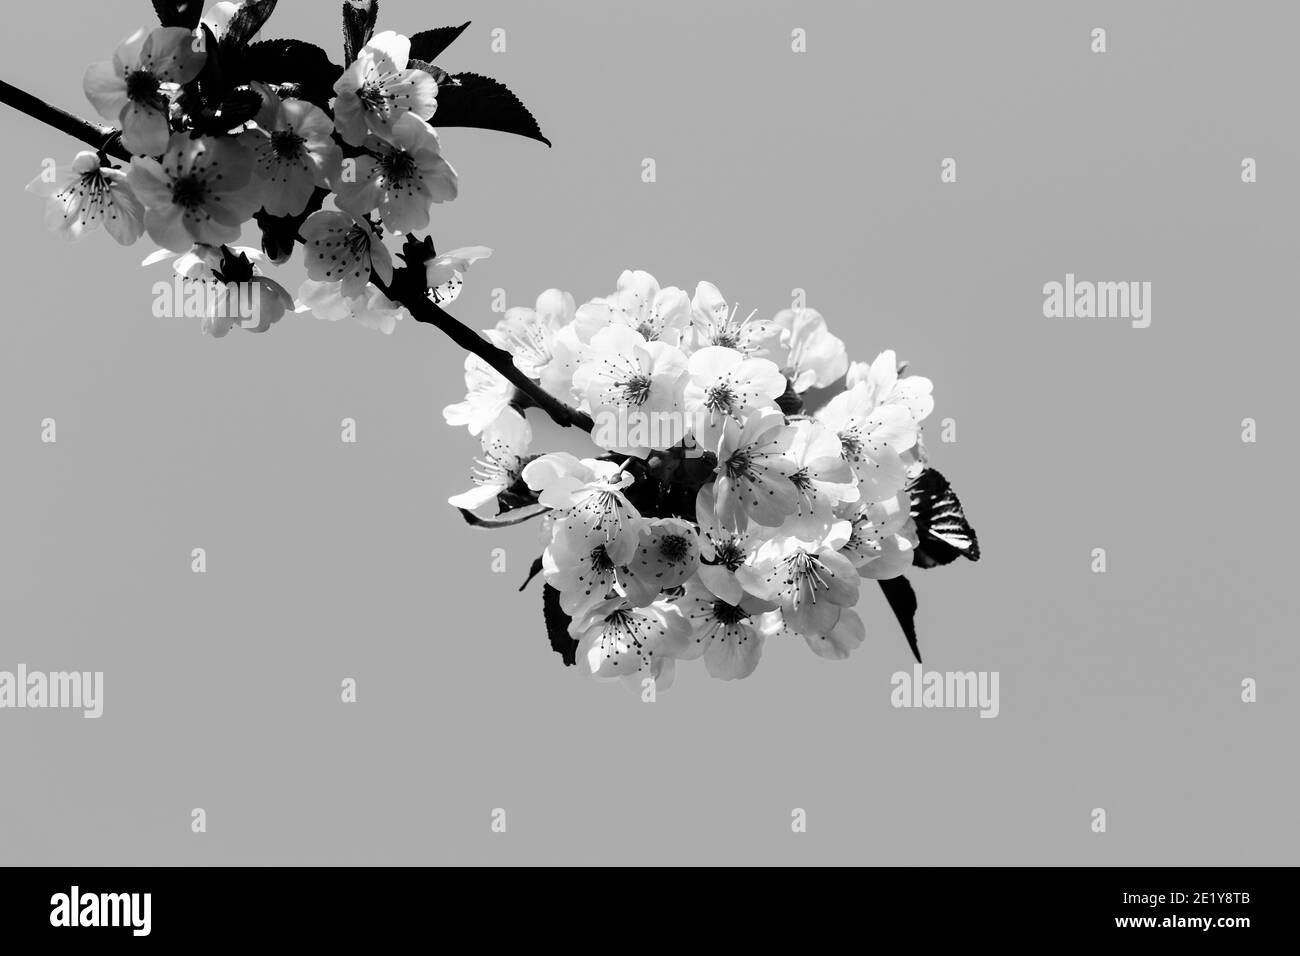 Rami di alberi di frutta in fiore illuminati al sole in giornata di sole e fondo grigio chiaro. Piante da fiore della famiglia delle rose Rosaceae, genere Prunus. Ciliegio selvatico. Foto Stock